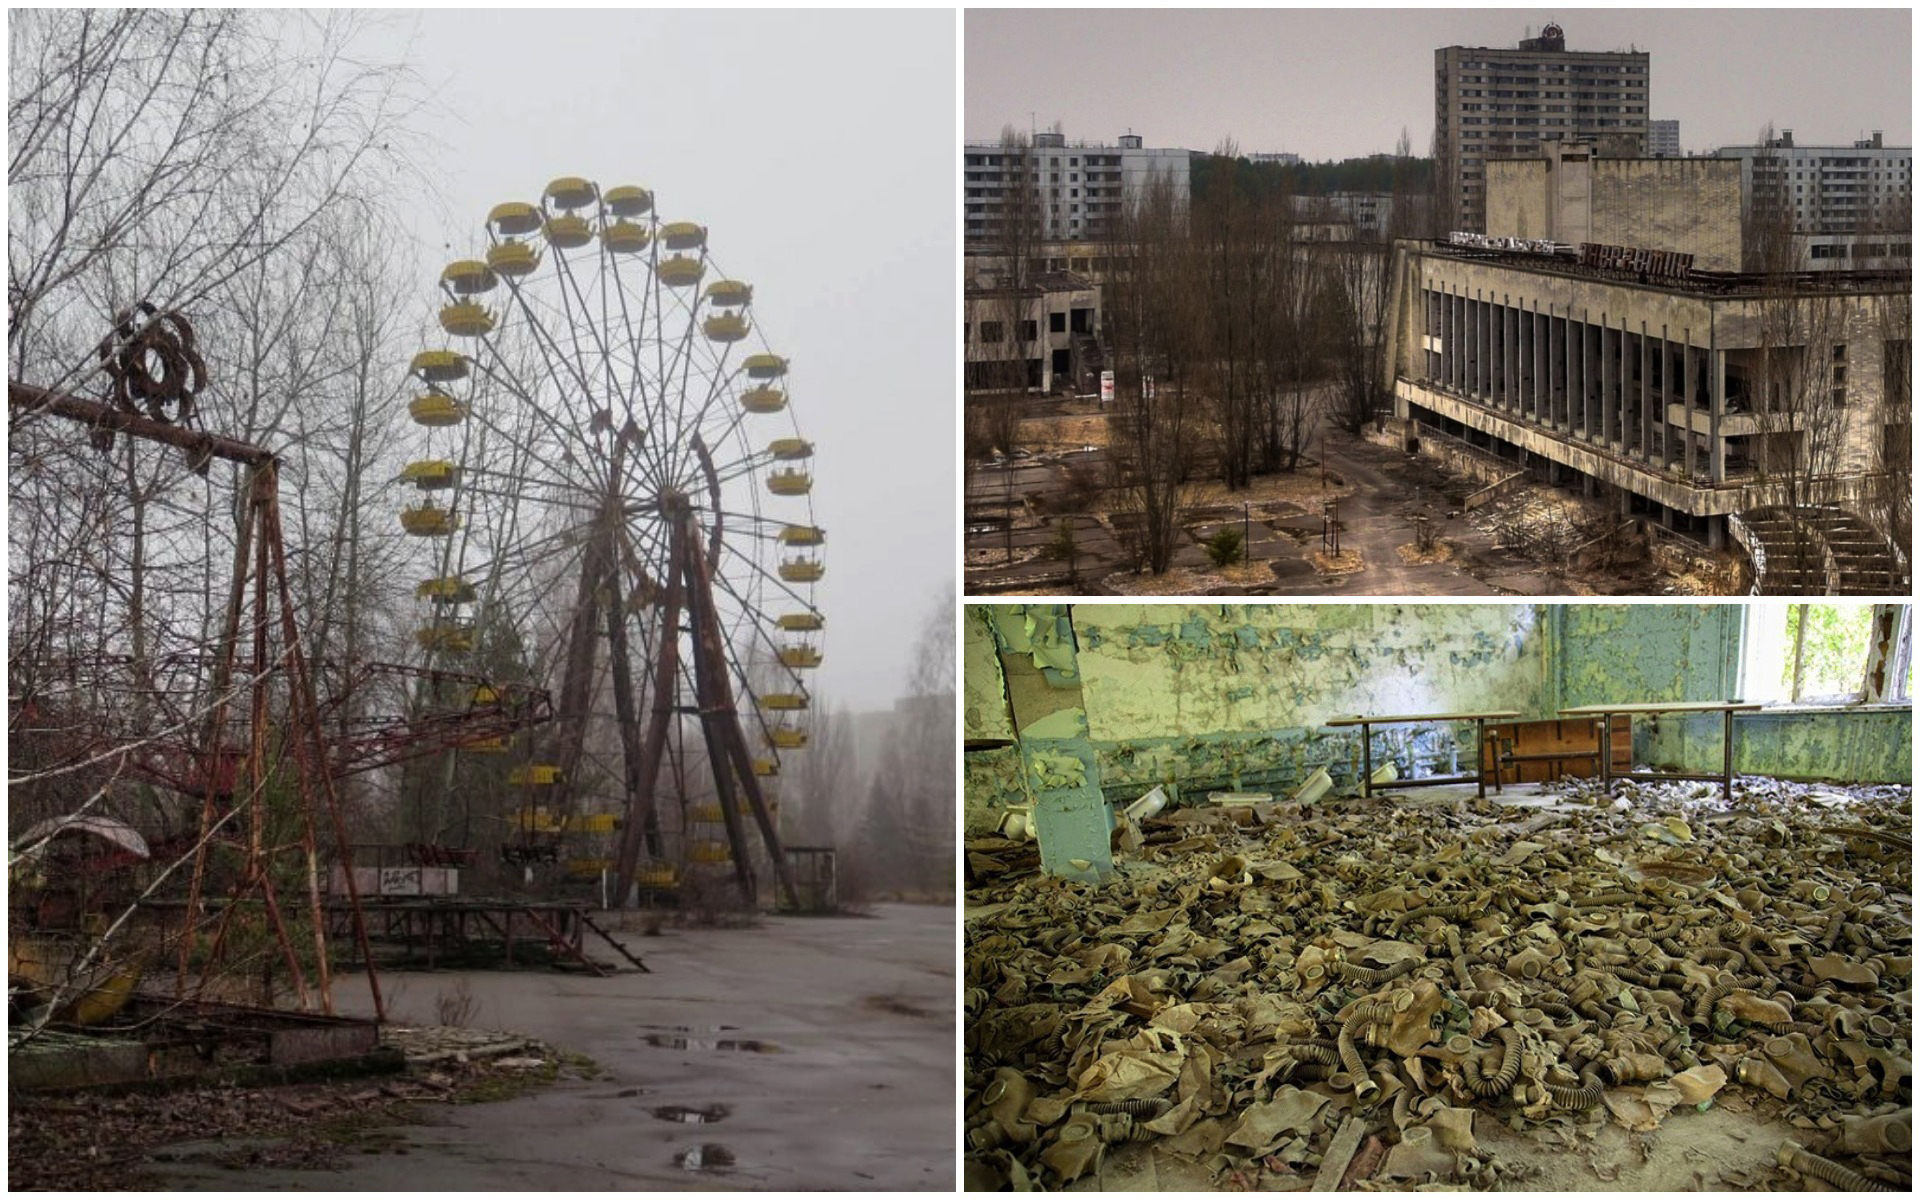 Сколько лет прошло с чернобыльской